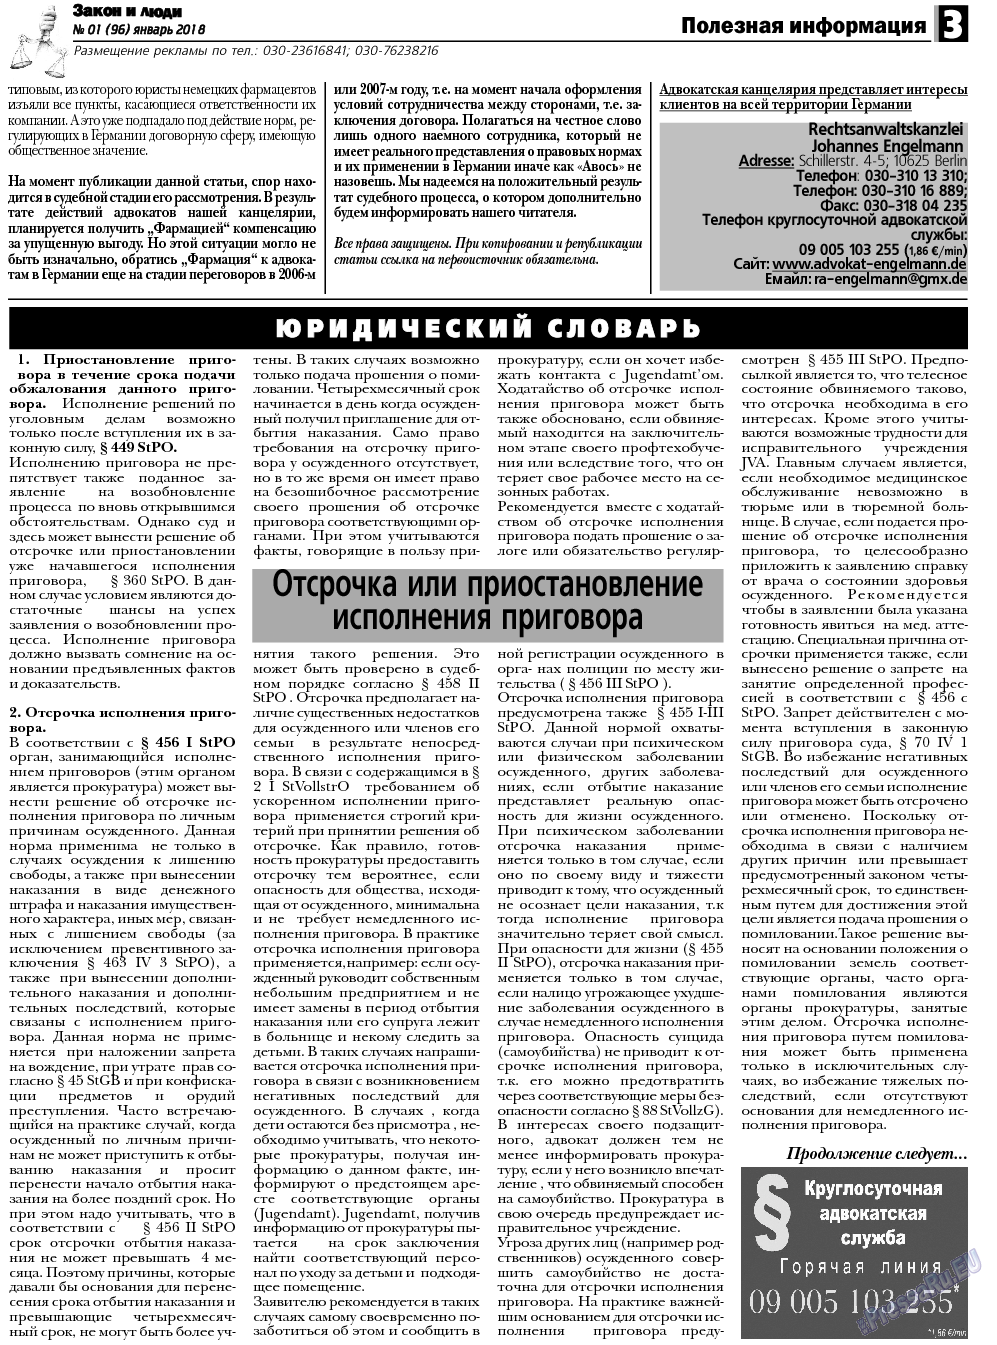 Закон и люди, газета. 2018 №1 стр.3